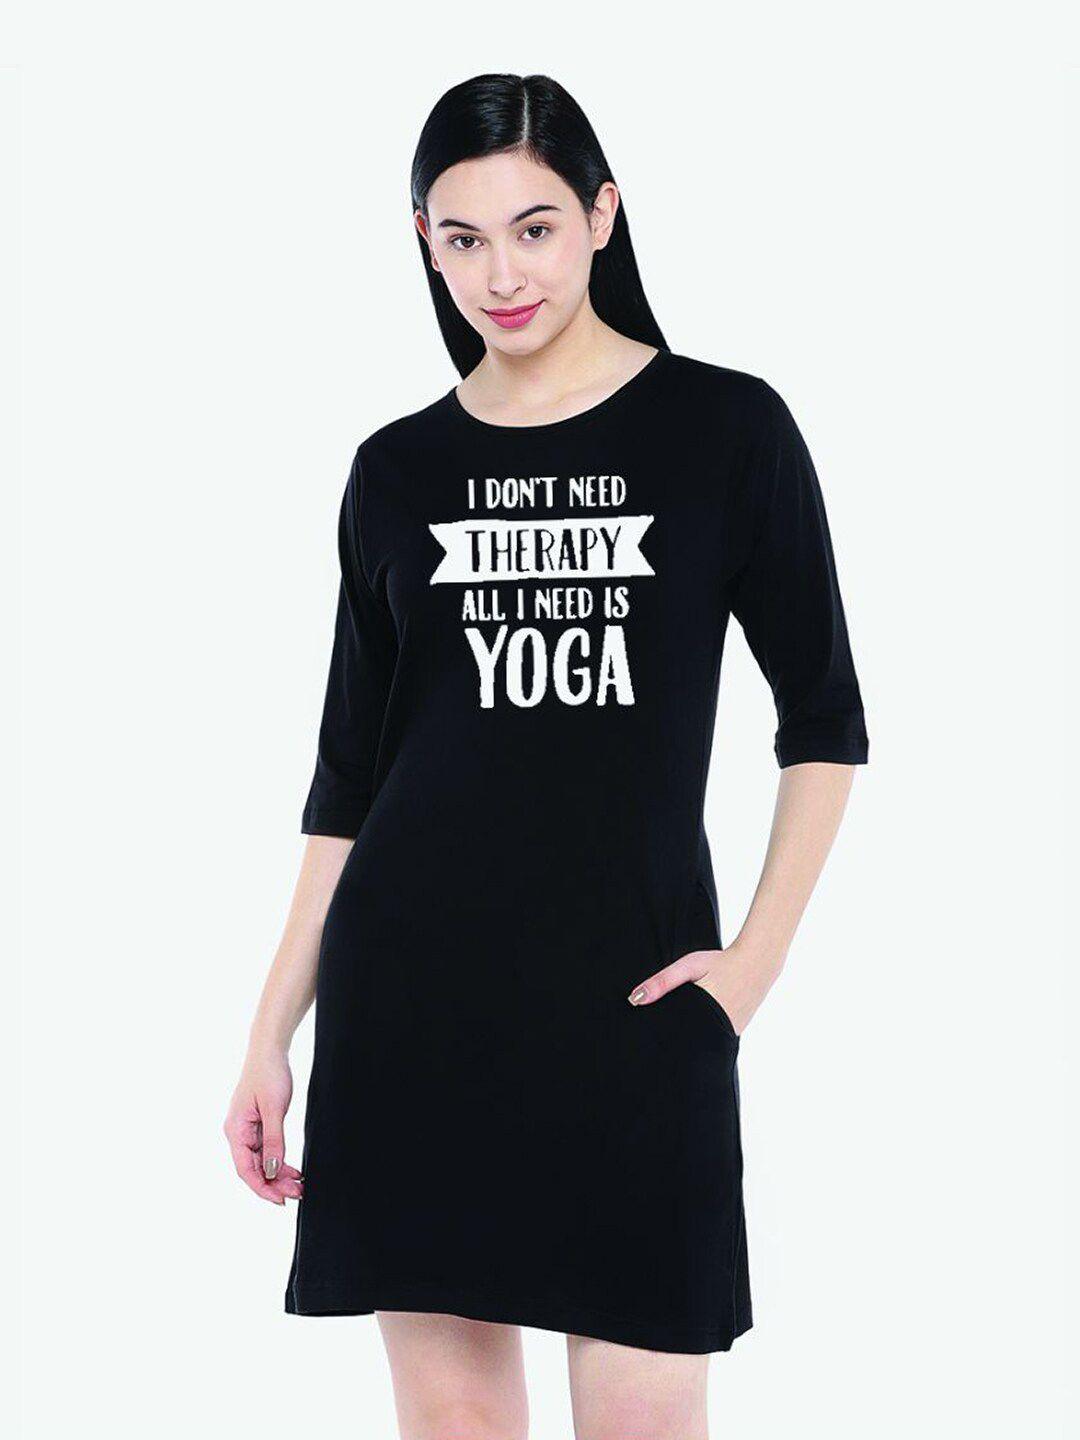 the-lugai-fashion-women-black-yoga-printed-cotton-t-shirt